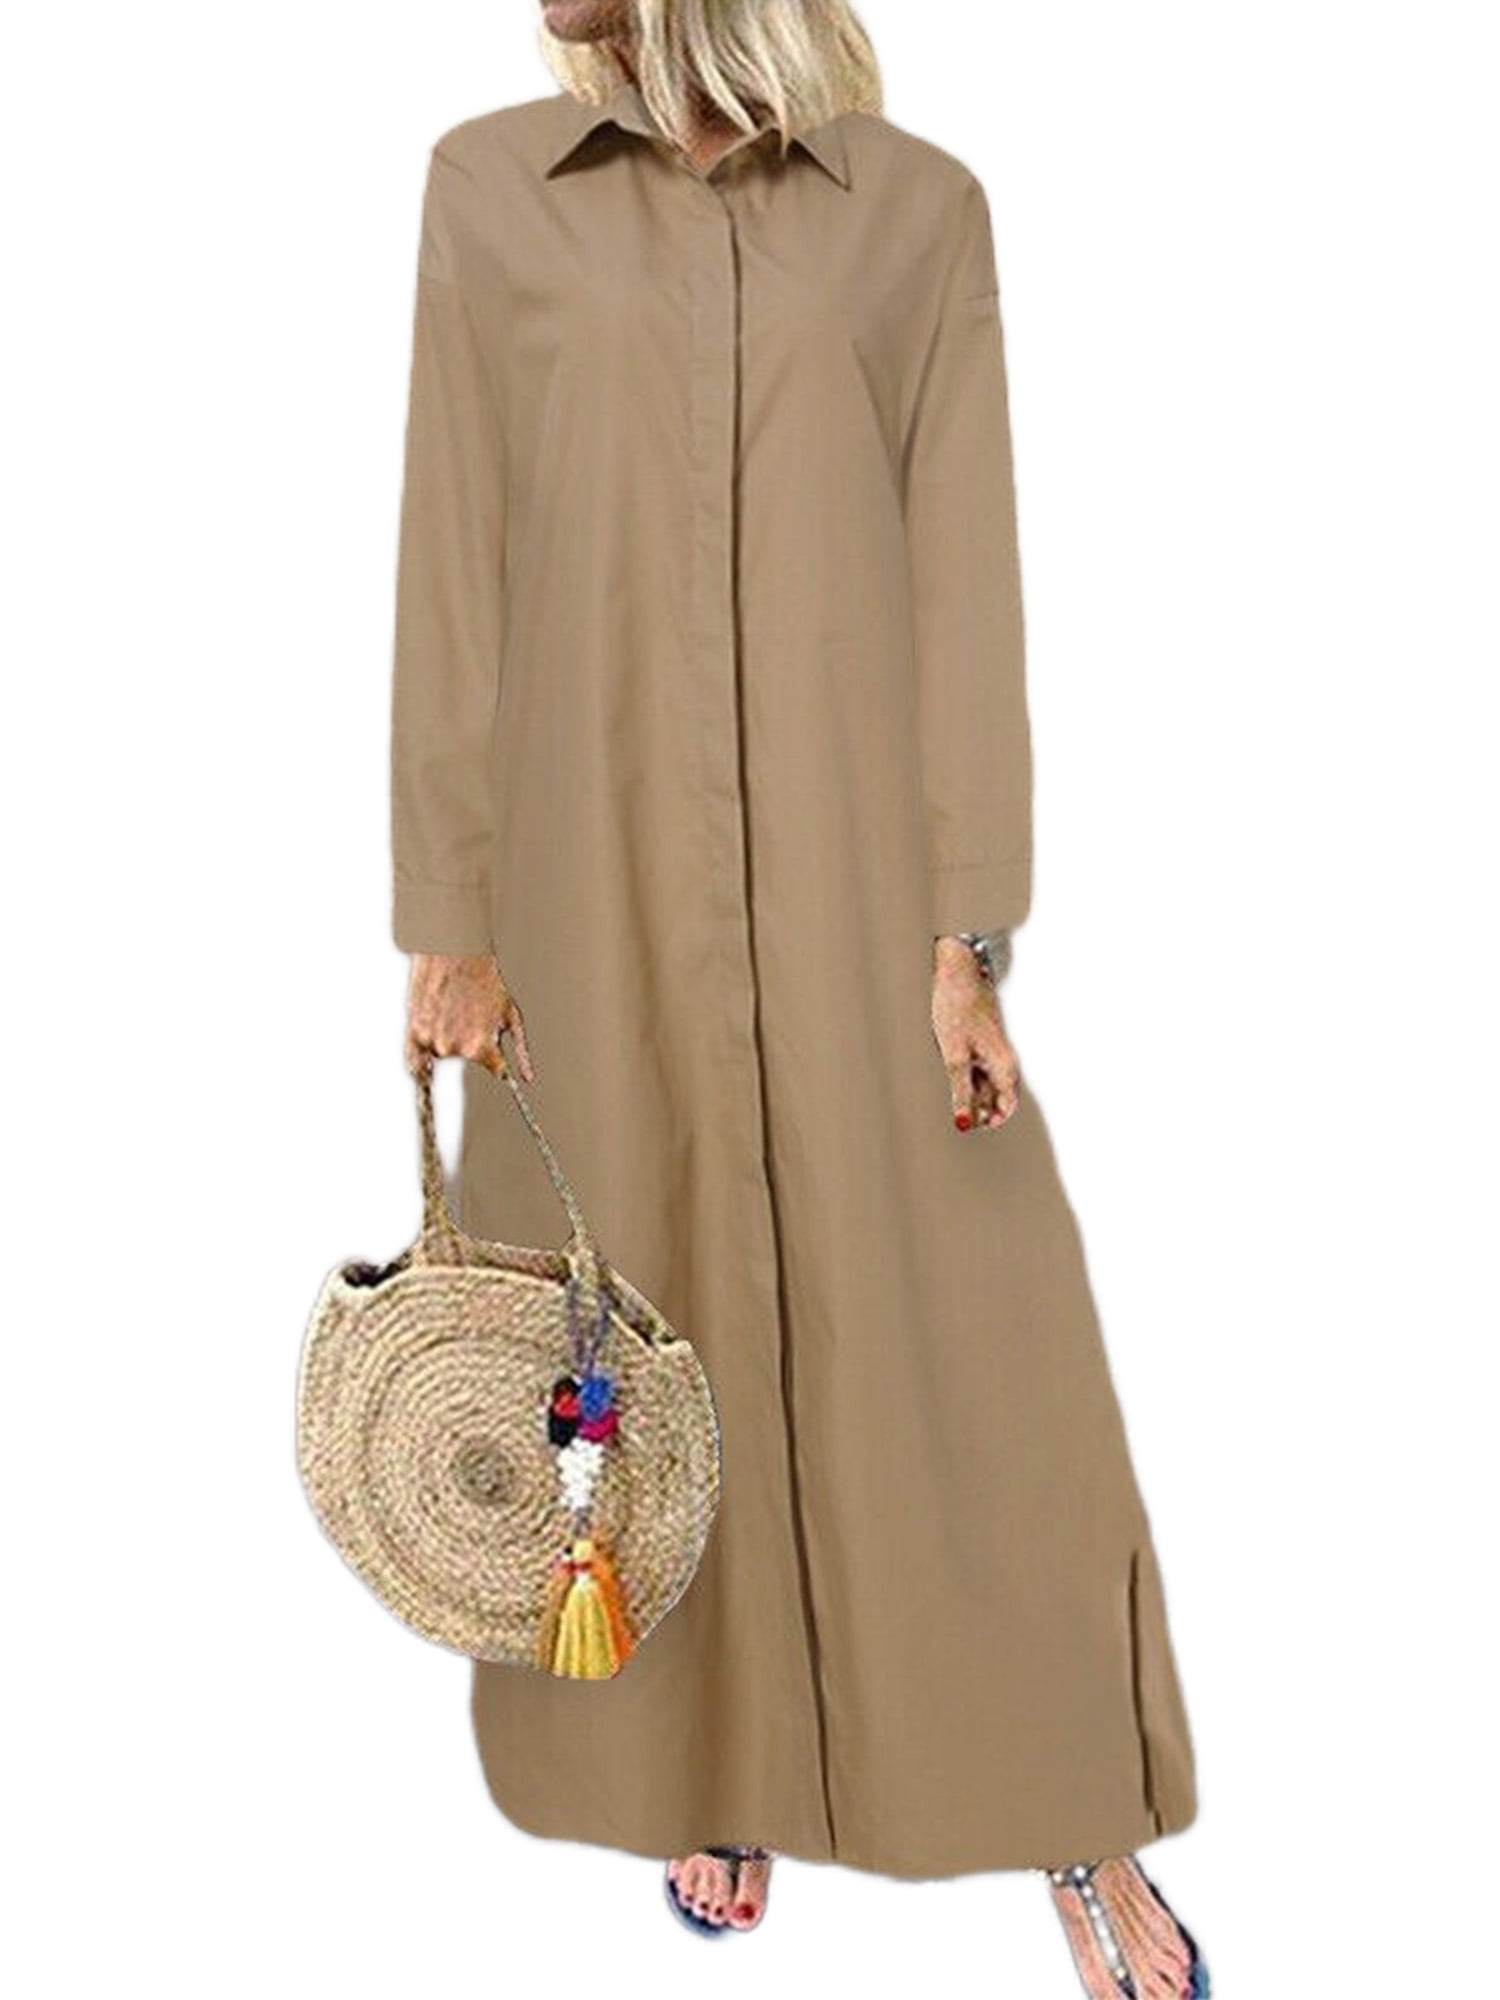 Avamo Women Midi Dresses Long Sleeve Shirt Dress Lapel Casual